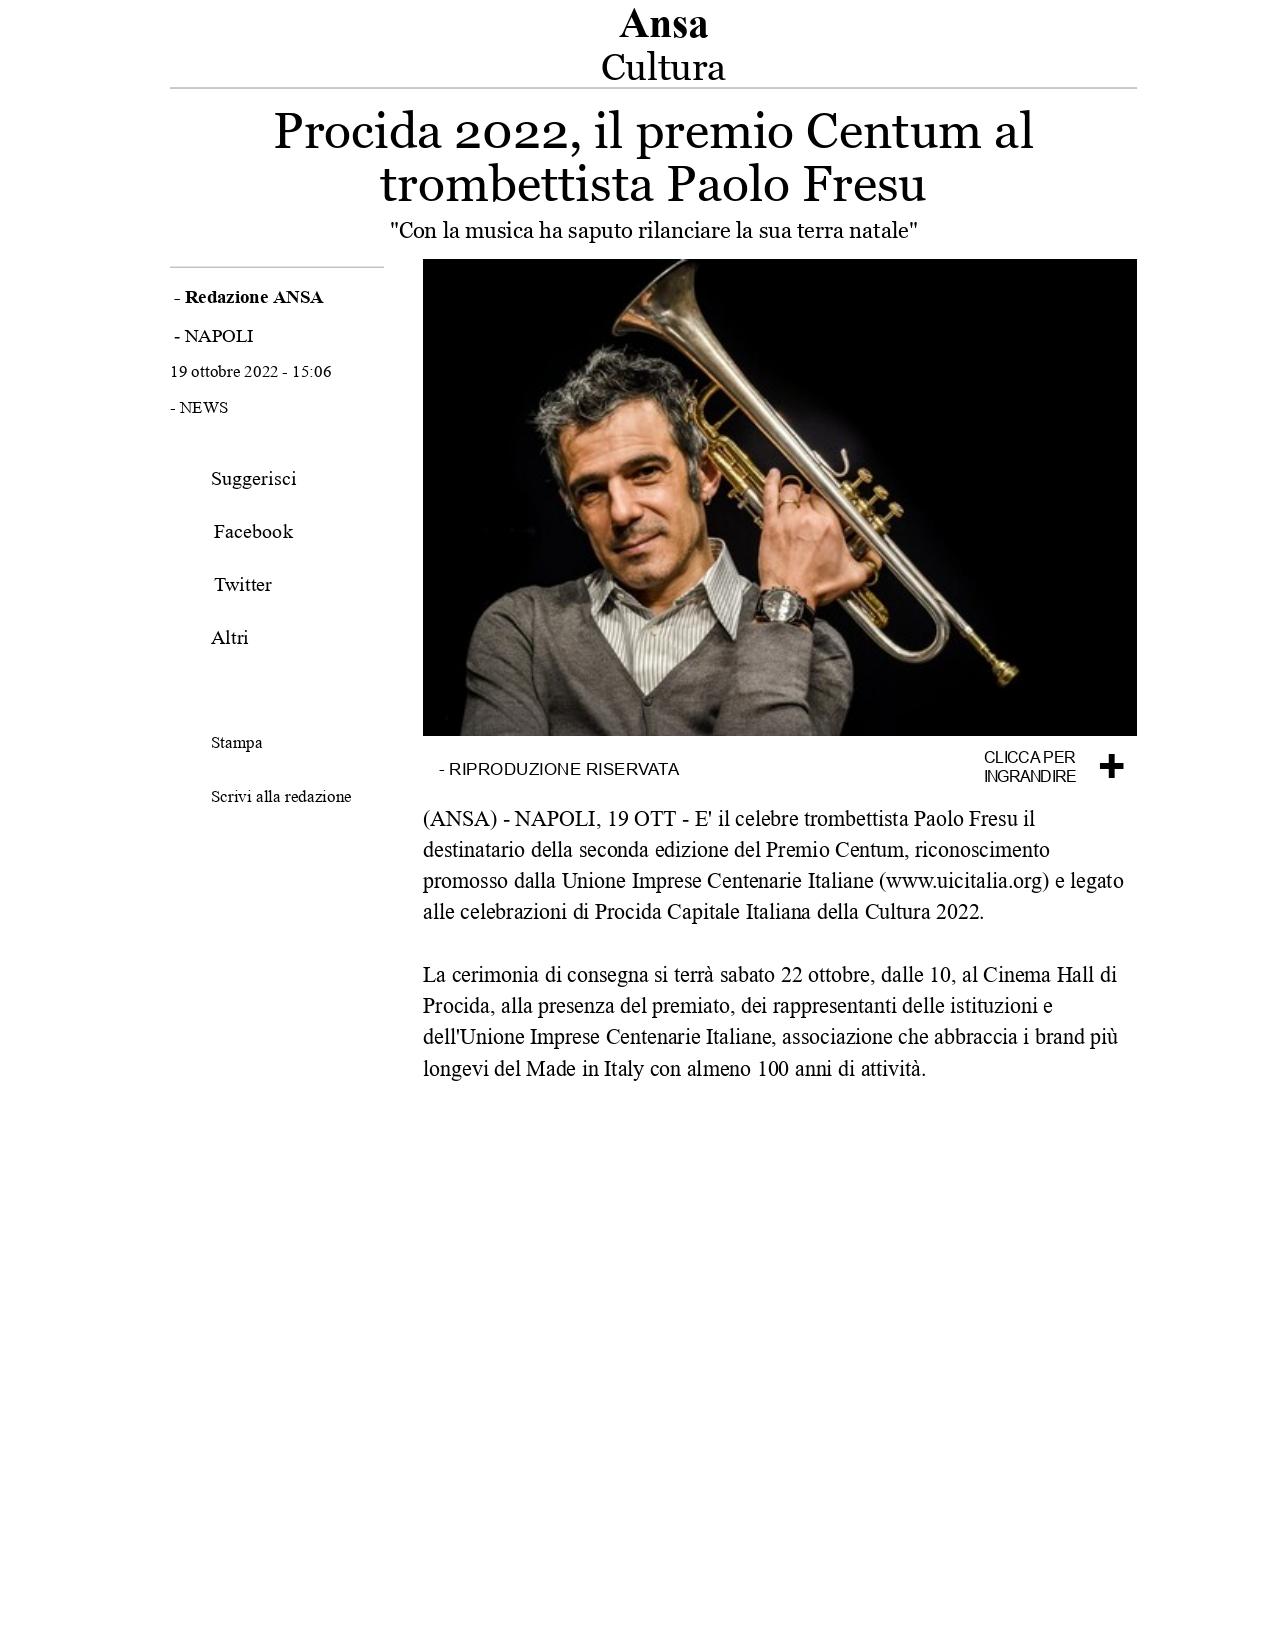 Ansa Procida 2022 il Premio Centum al trombettista Paolo Fresu 19 ottobre 2022 page 0001